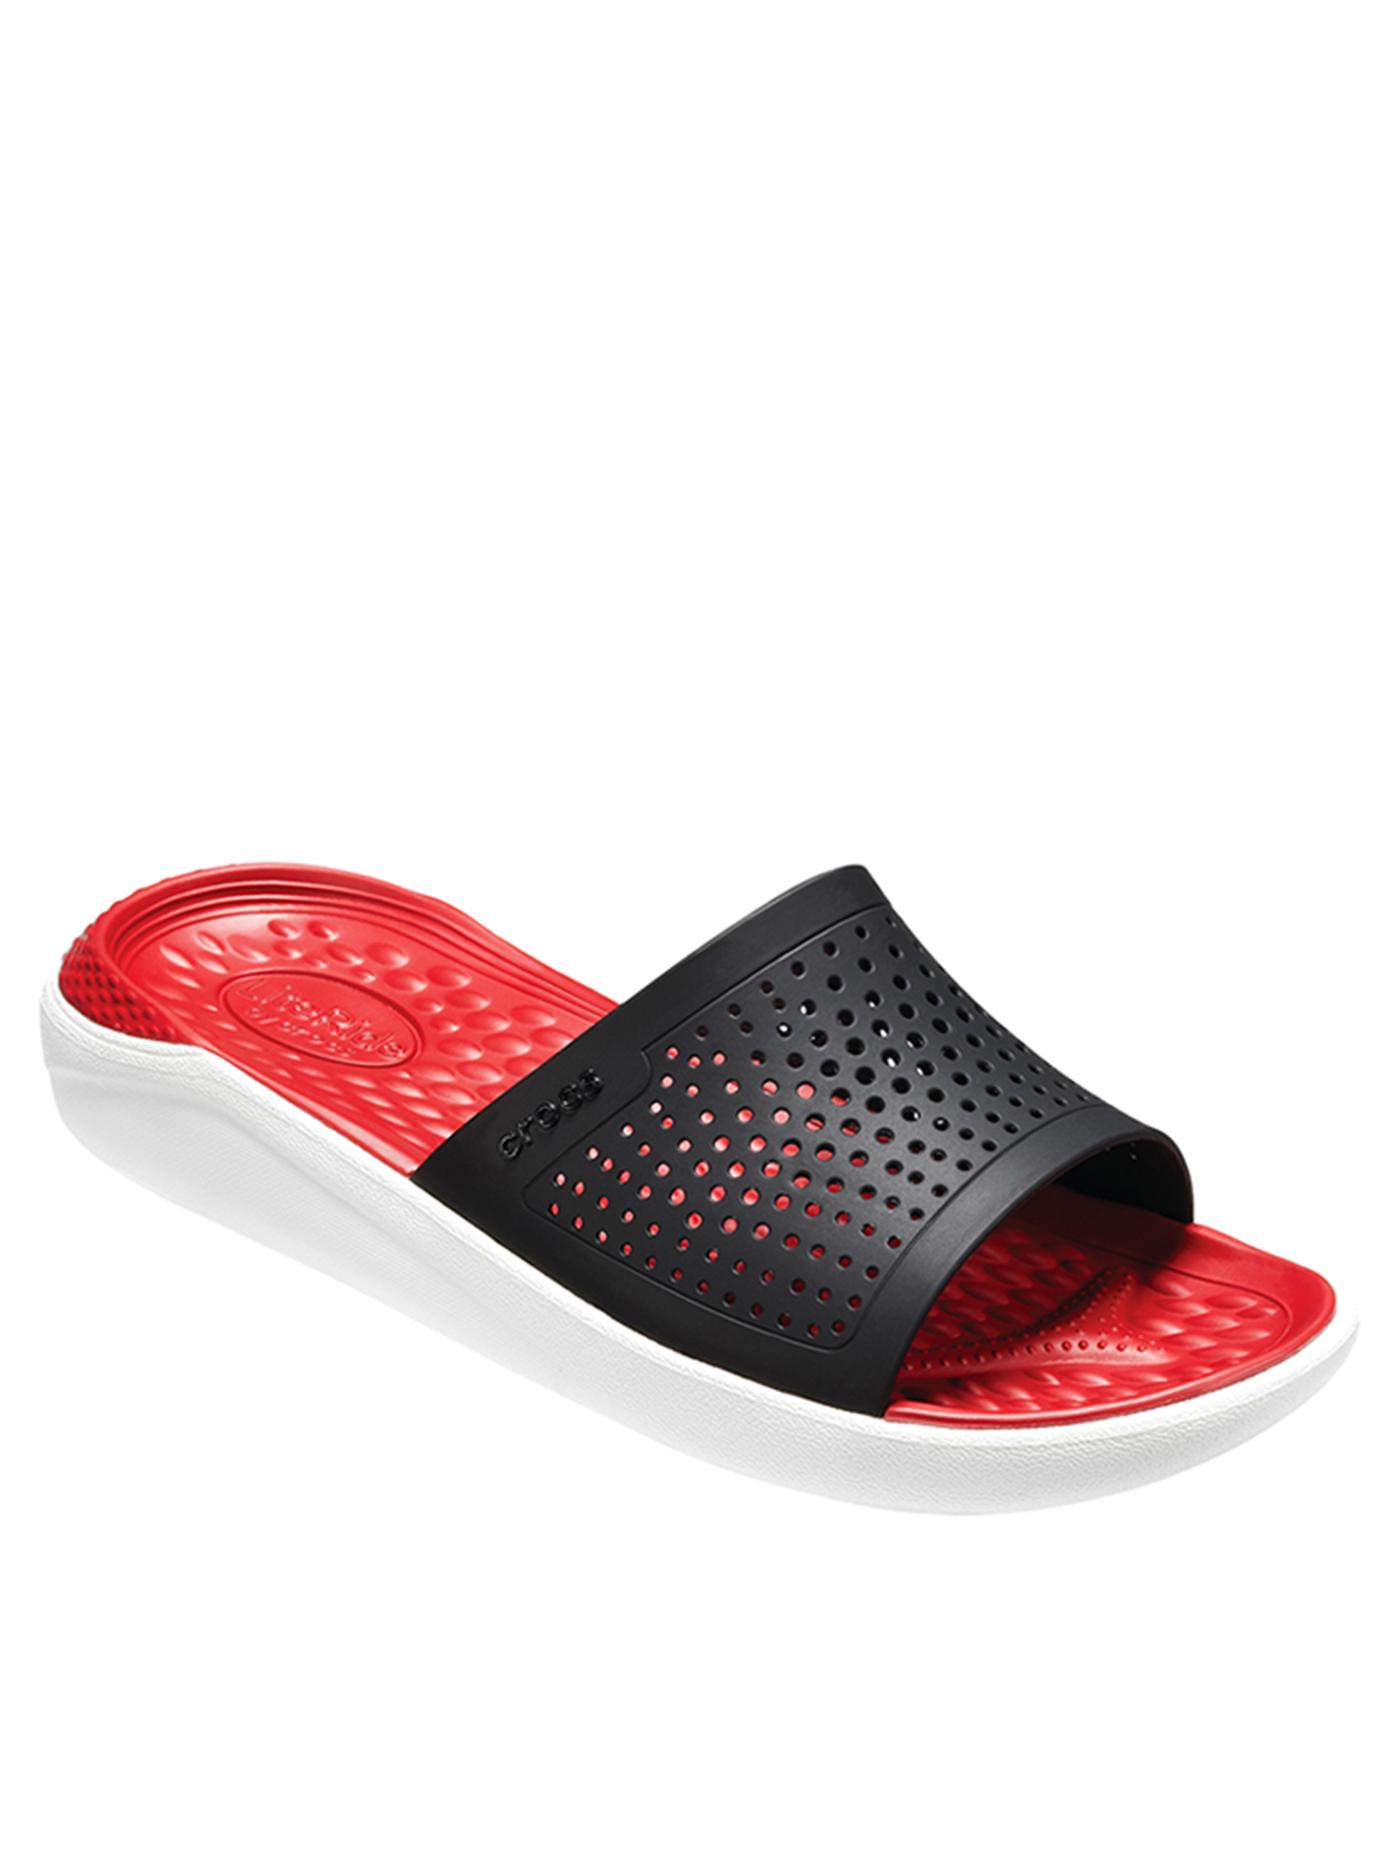 CROCS รองเท้าแตะแบบสวมสำหรับผู้ใหญ่ รุ่น Literide Slide ไซส์ M6/W8 สีแดง-ขาว